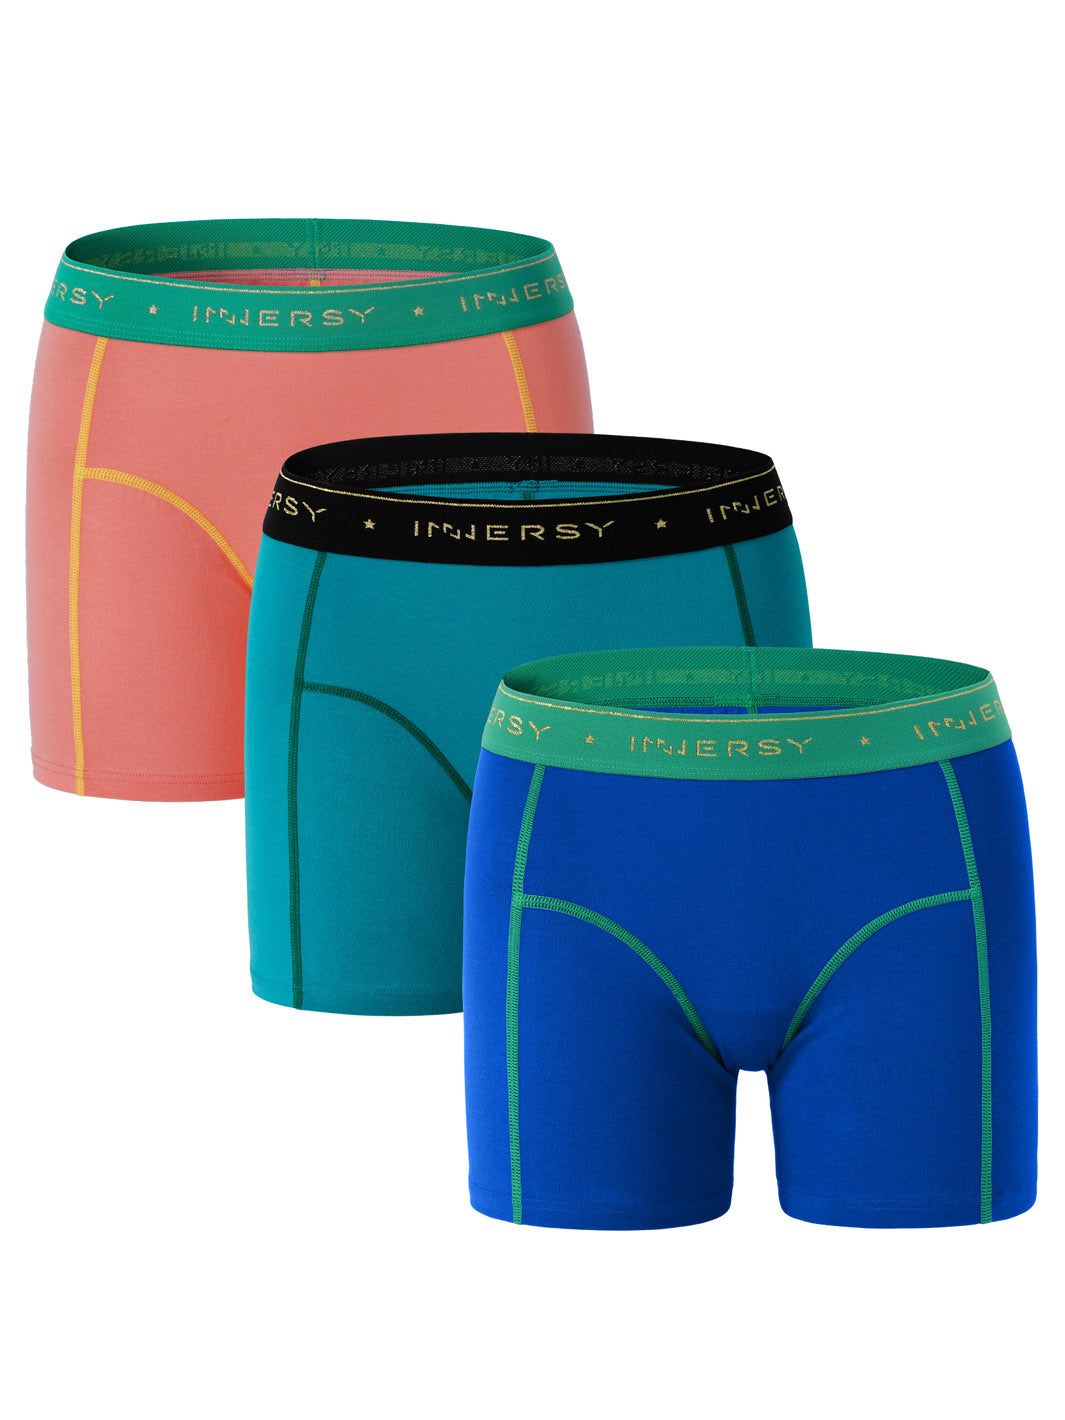 Womens Cotton Boy shorts Panties Boxer Briefs Underwear 3 Inseam 5